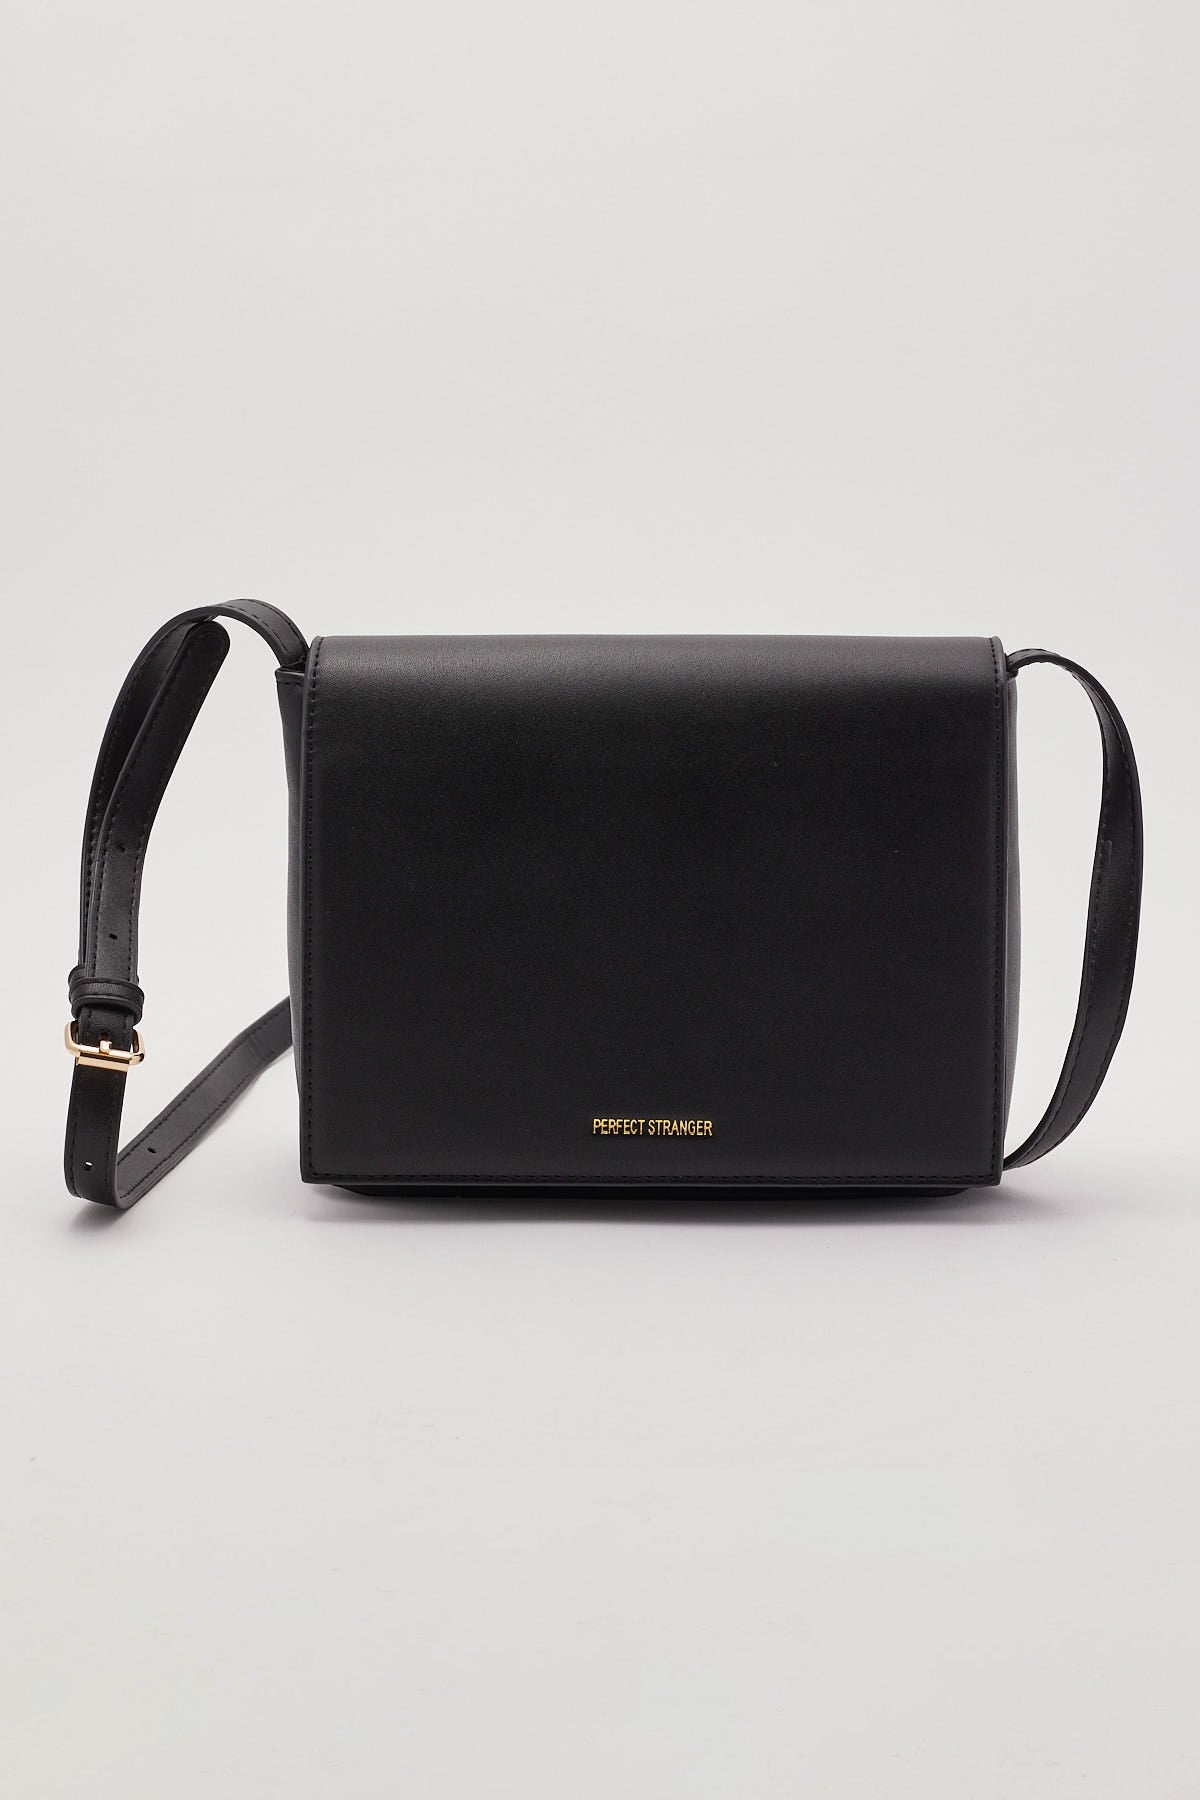 Perfect Stranger Kalista Folded Shoulder Bag Black – Universal Store